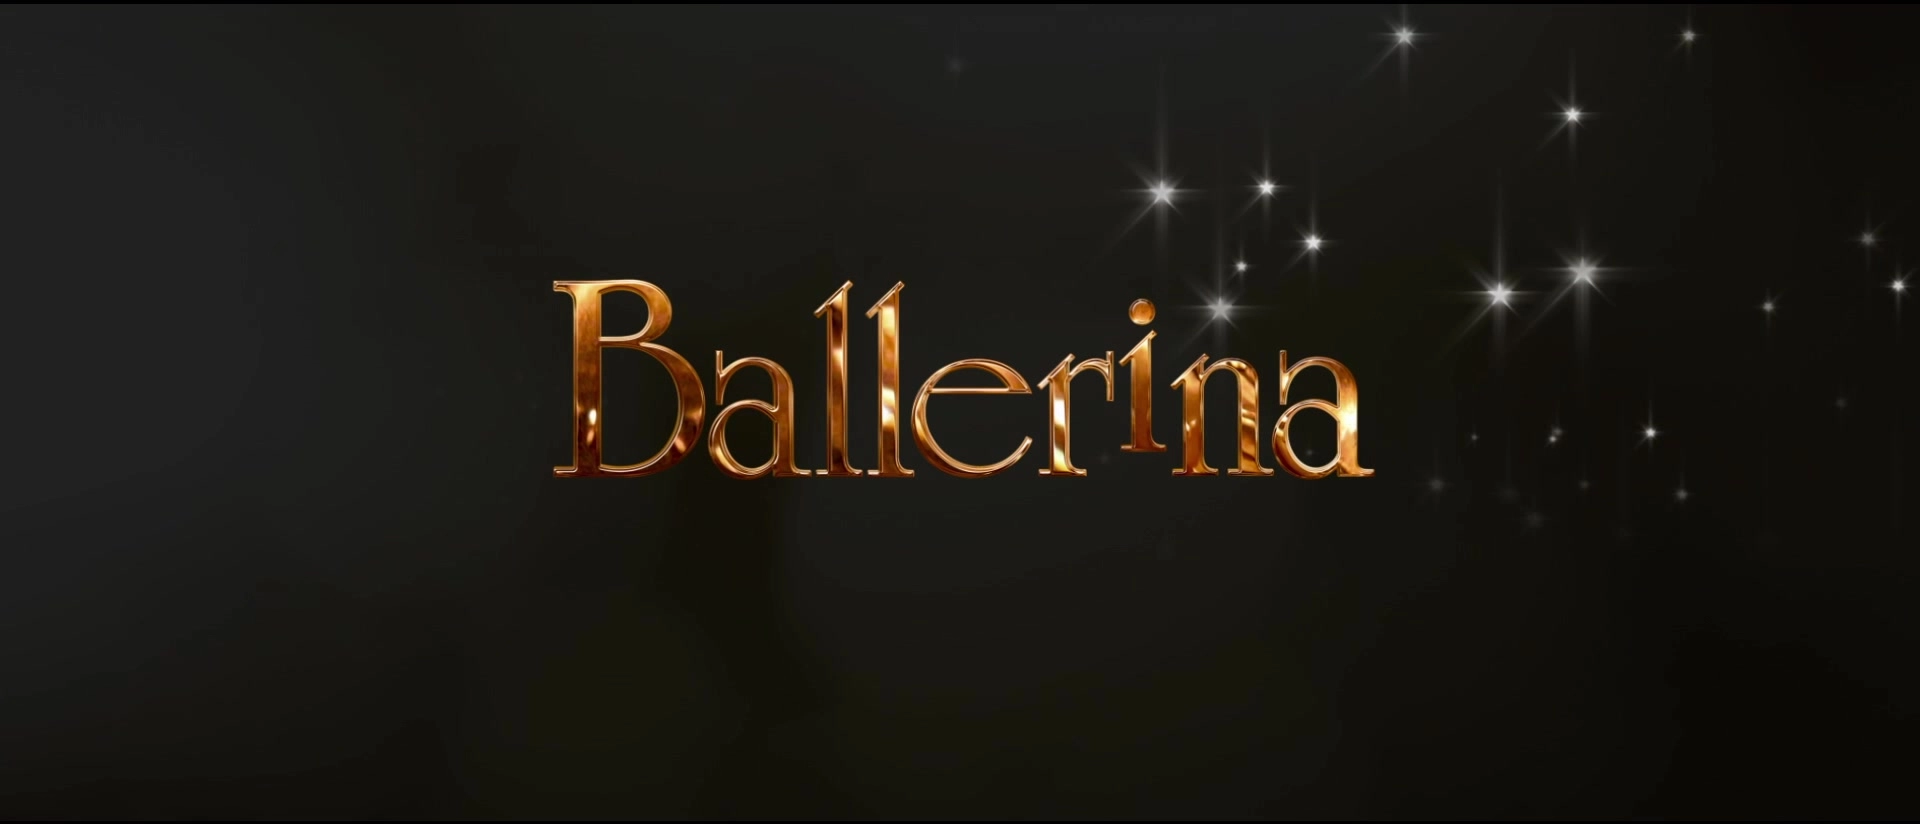 Ballerina - Gib deinen Traum niemals auf